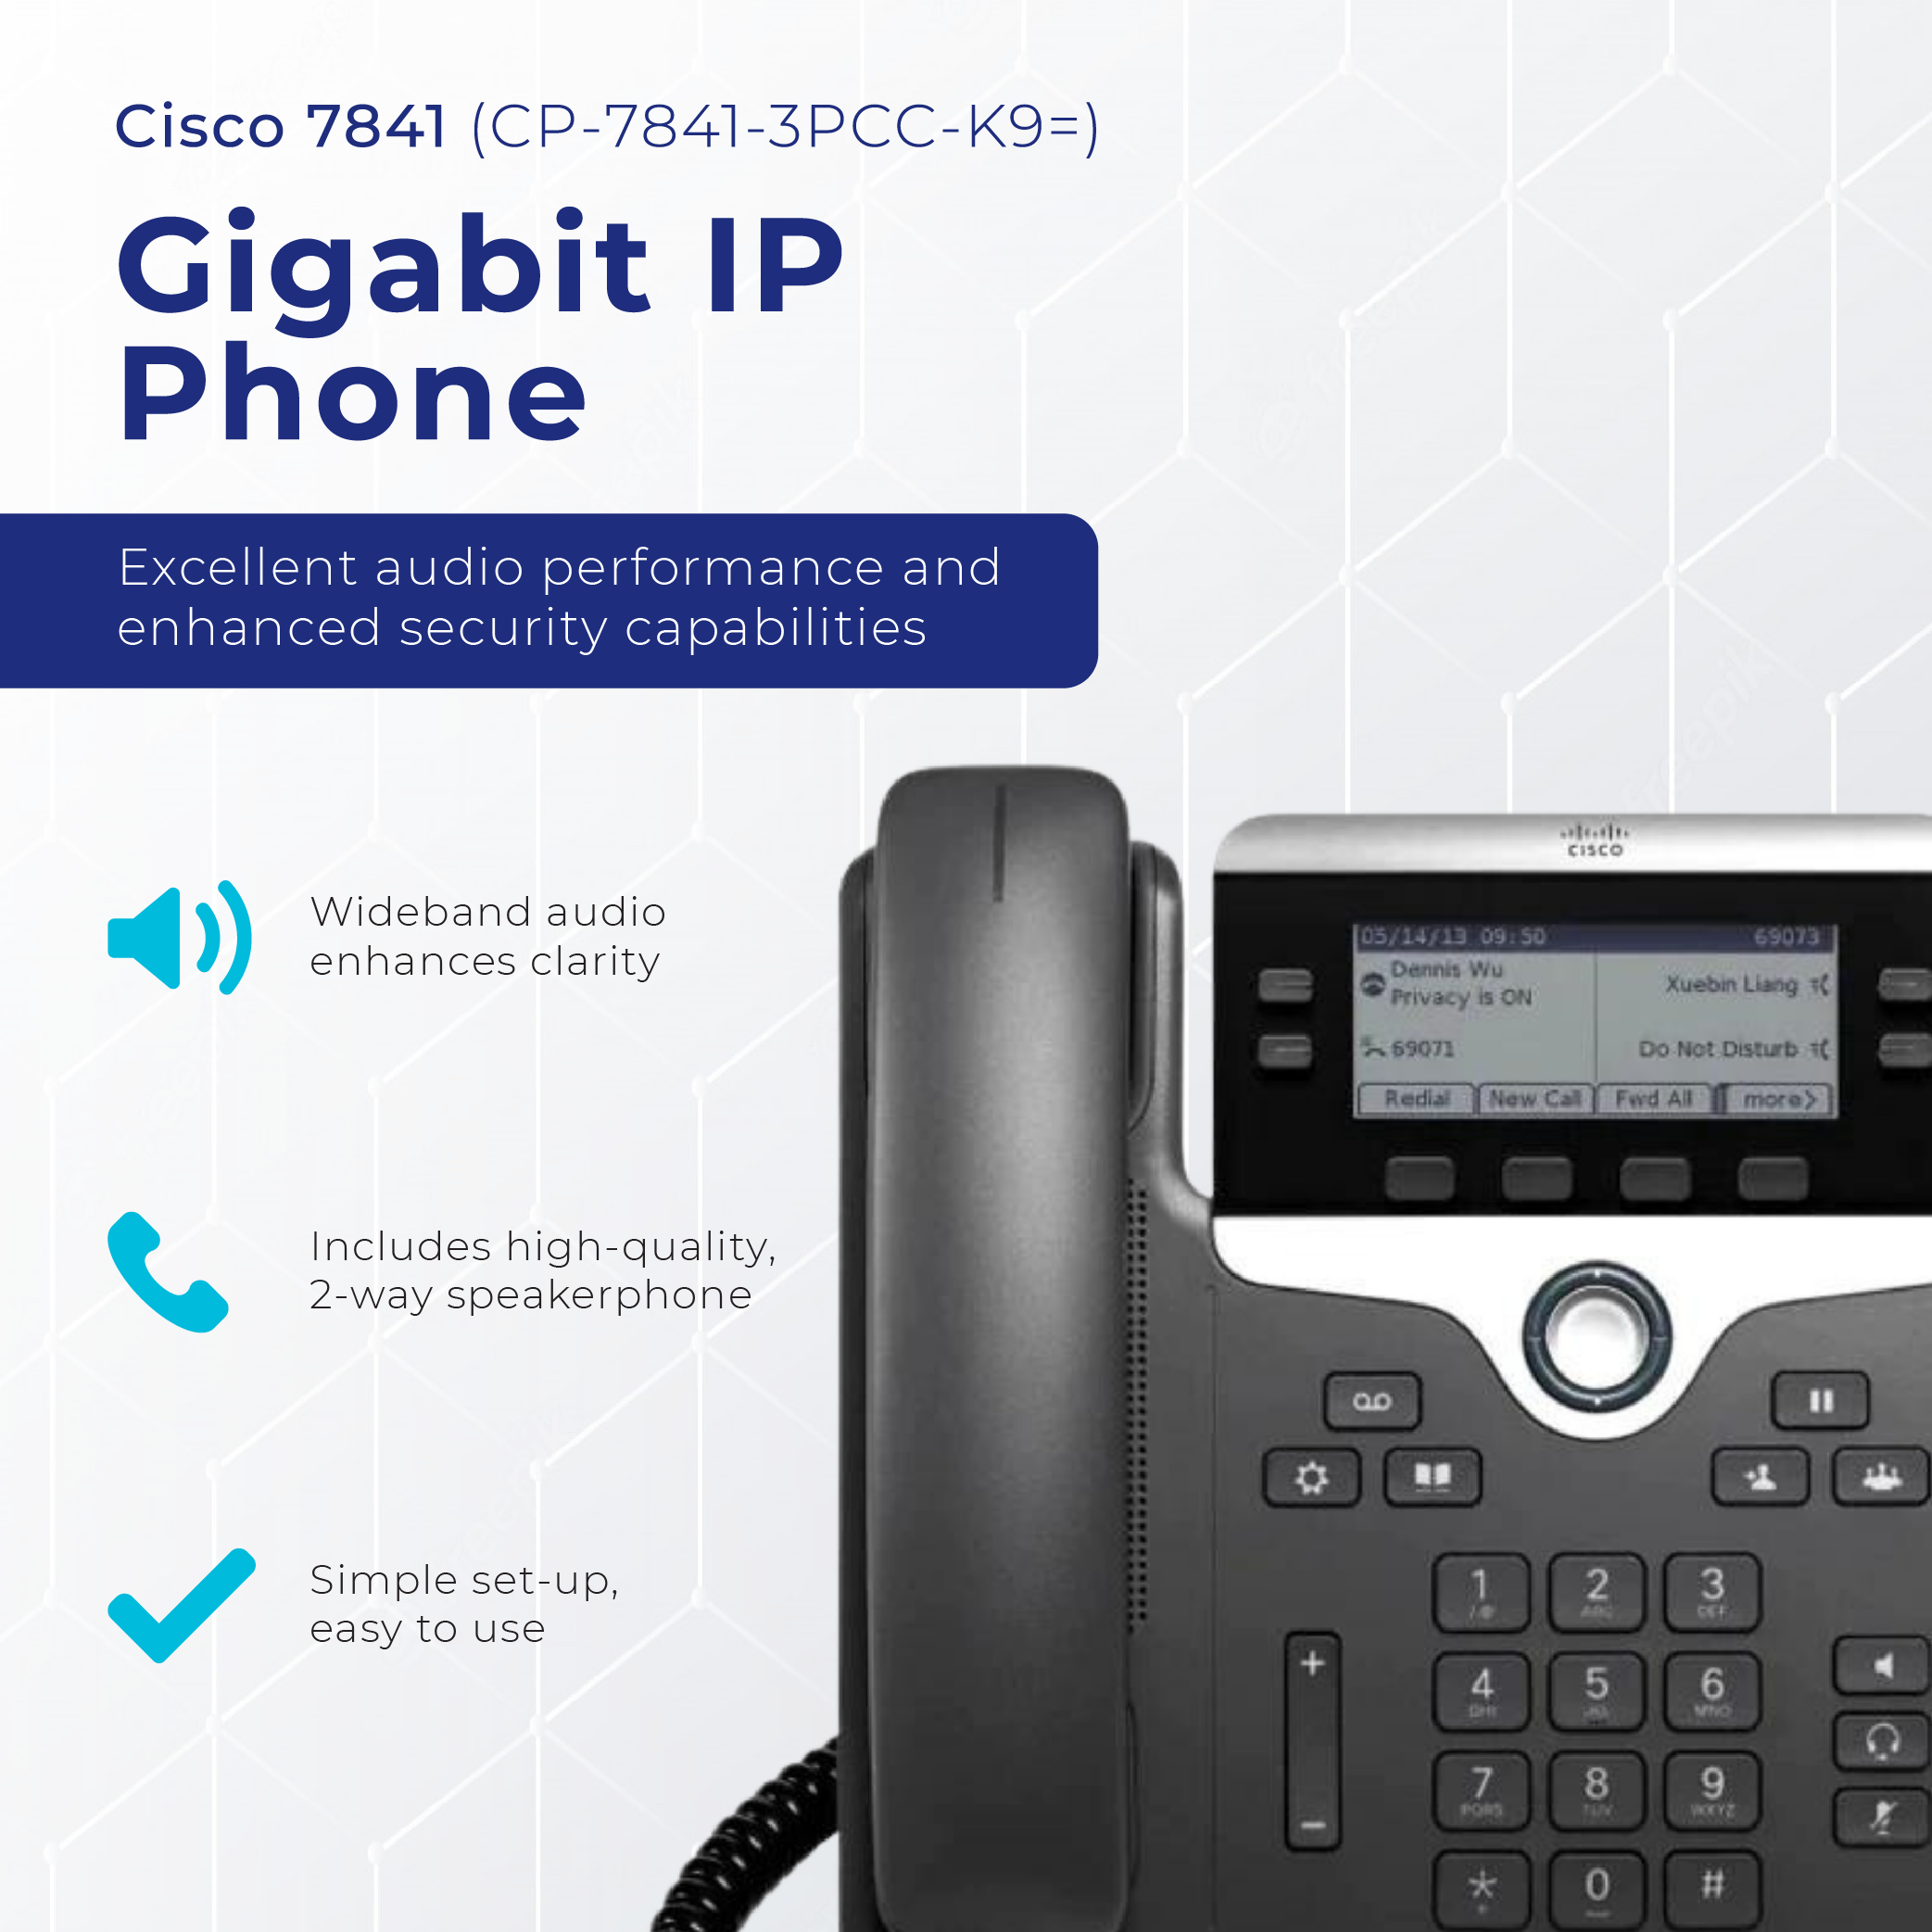 Cisco 7841 Gigabit IP Phone